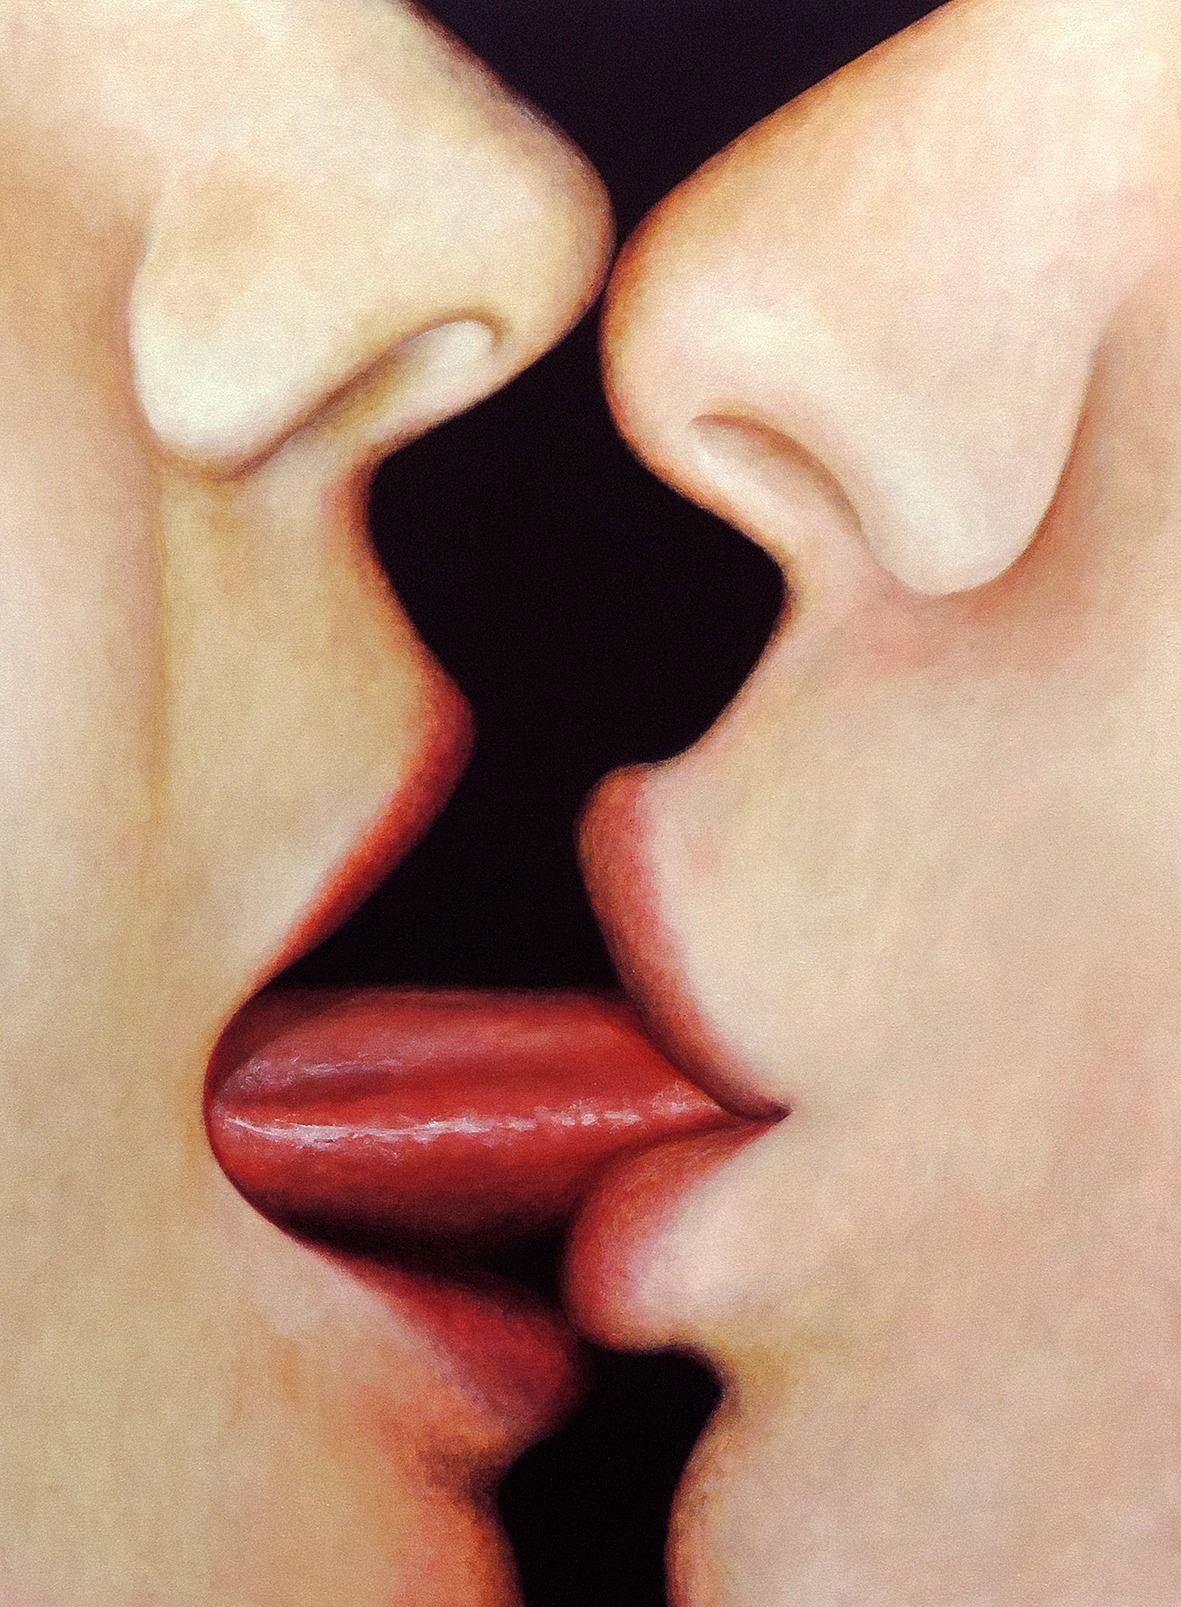 Ай я гуляла в губы целовала. Поцелуй с языком. Поцелуй в губы. Французский поцелуй. Поцелуй картинка губы.